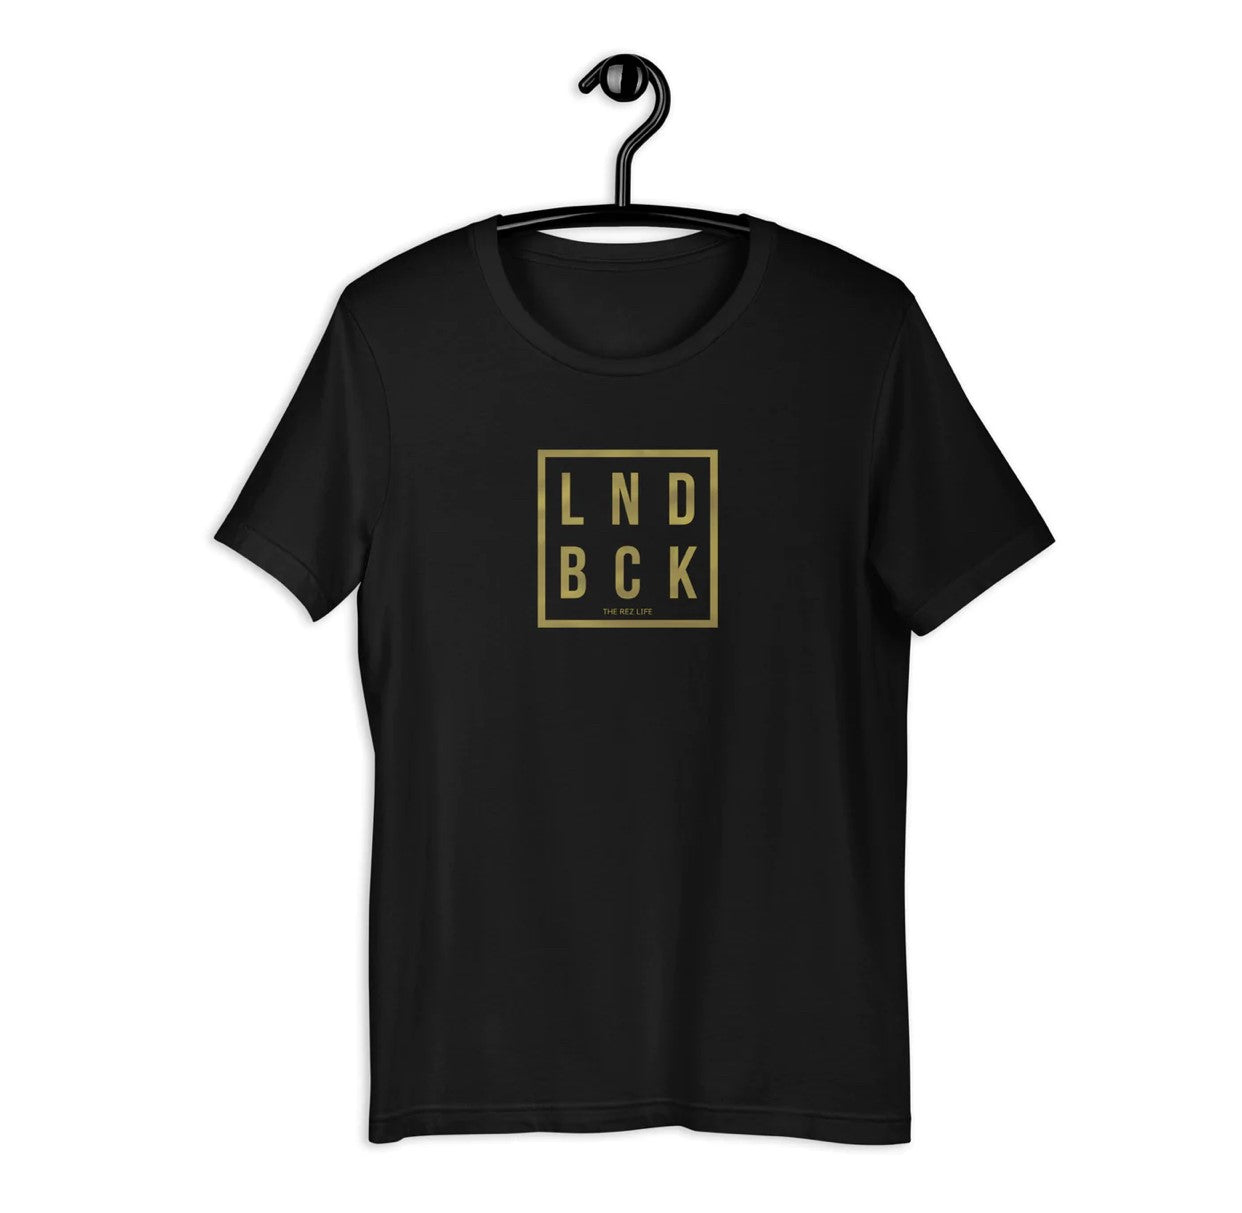 LND BCK T-Shirt